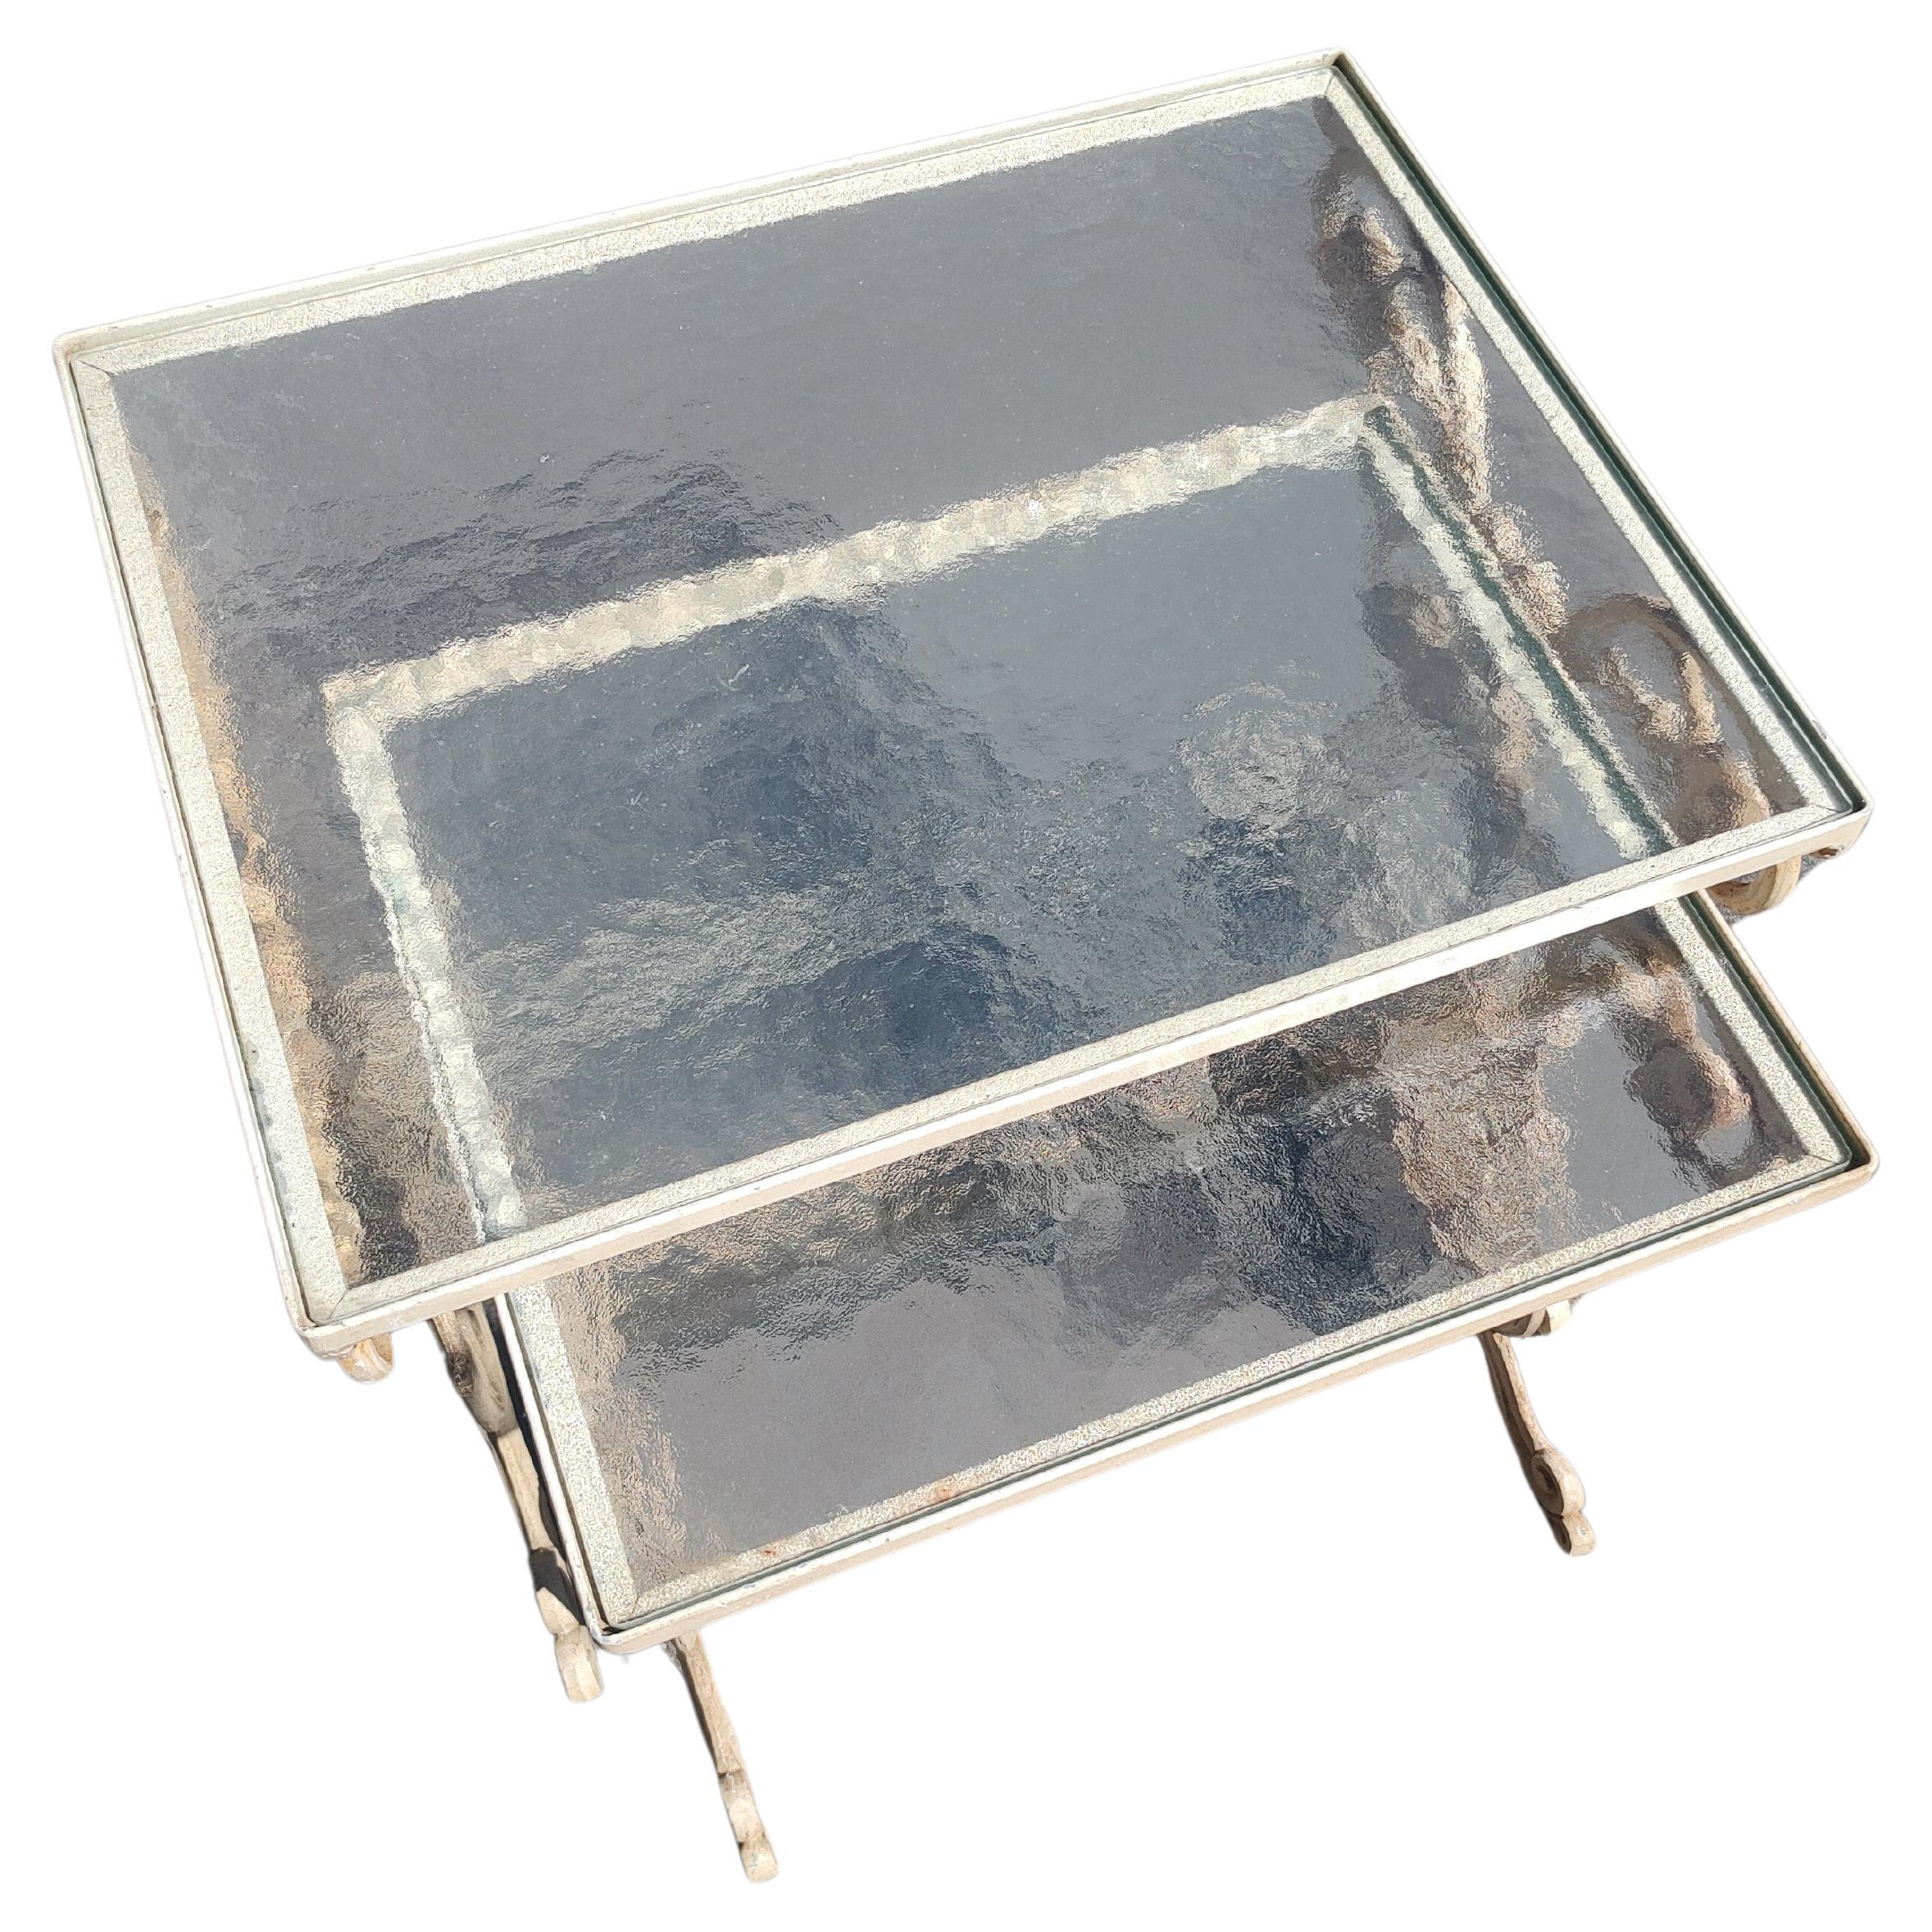 Fabuleuse paire de tables empilables en fonte d'aluminium par Molla avec plateaux en verre obscur. La plus petite table mesure 14,25 x 16,25 x 17h. En excellent état vintage avec une usure minimale. Le verre est parfait.